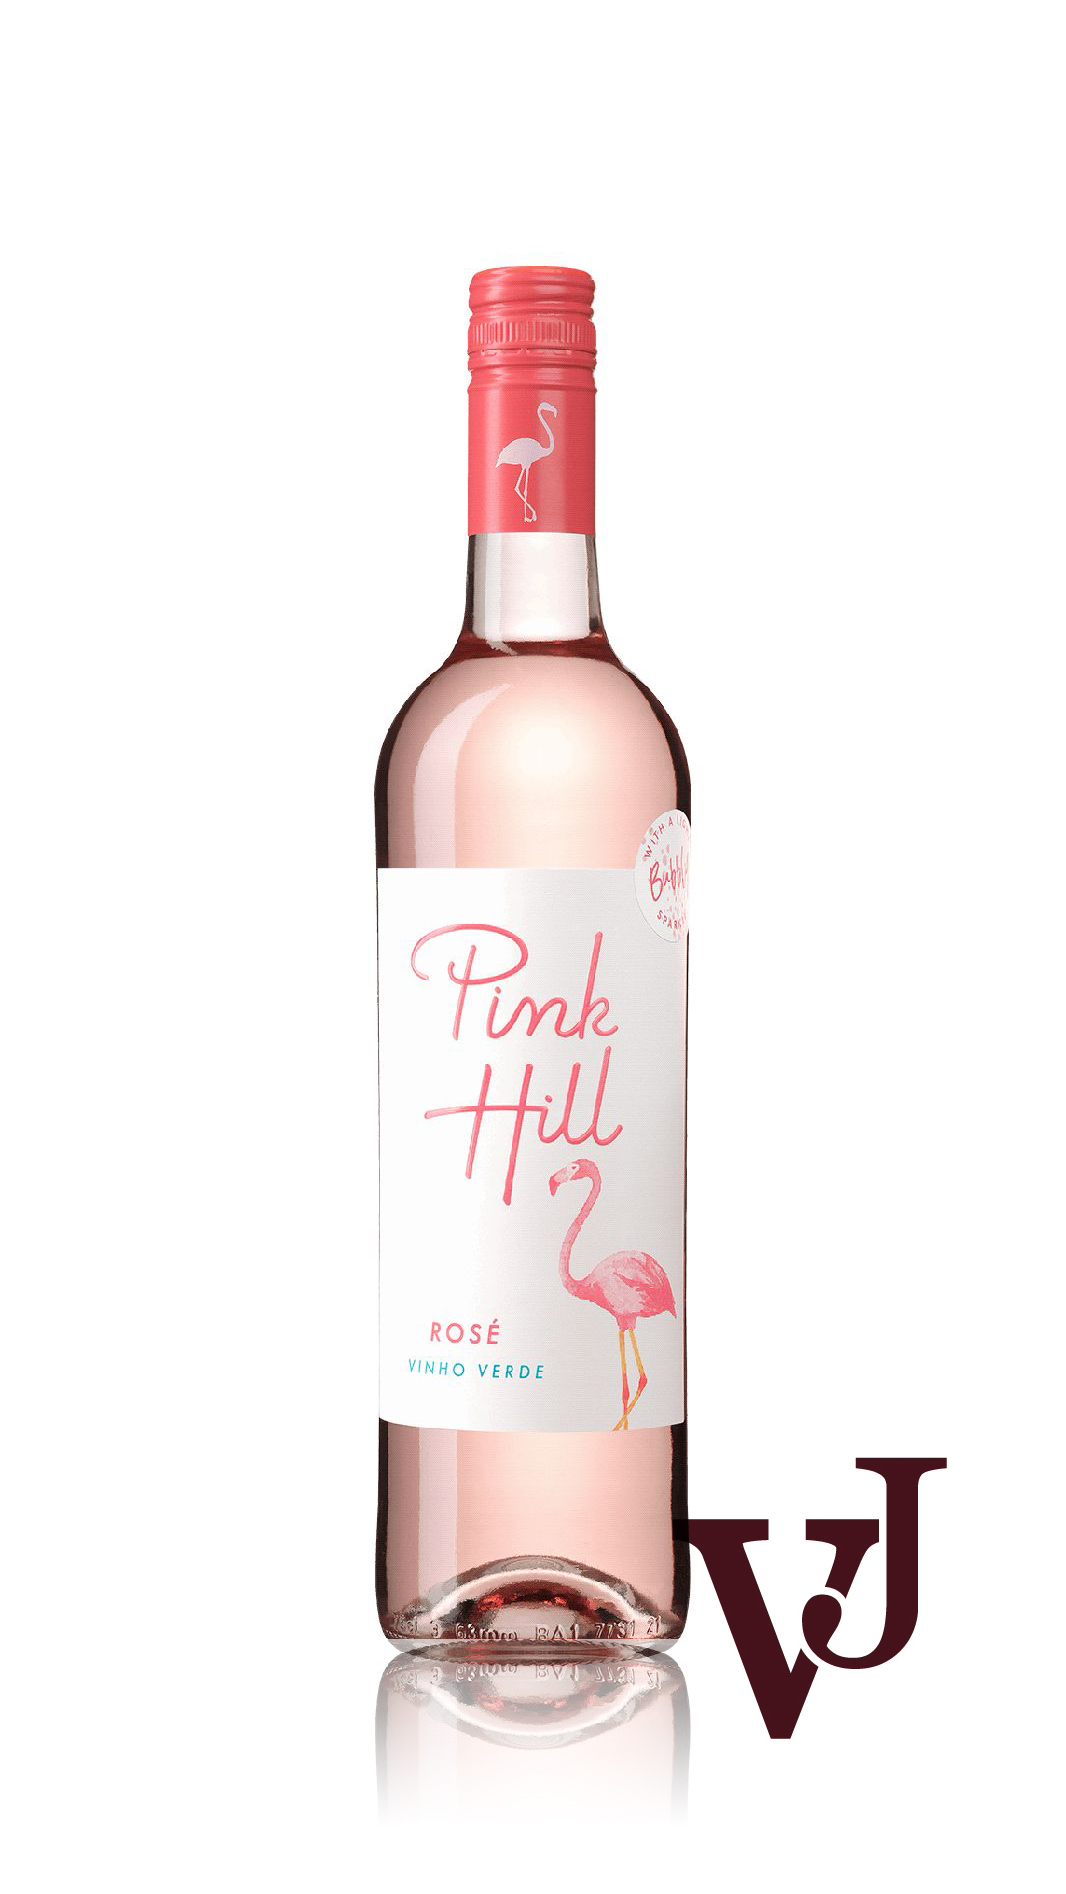 Rosé Vin - Pink Hill Rosé artikel nummer 208201 från producenten Forever Wine från området Portugal